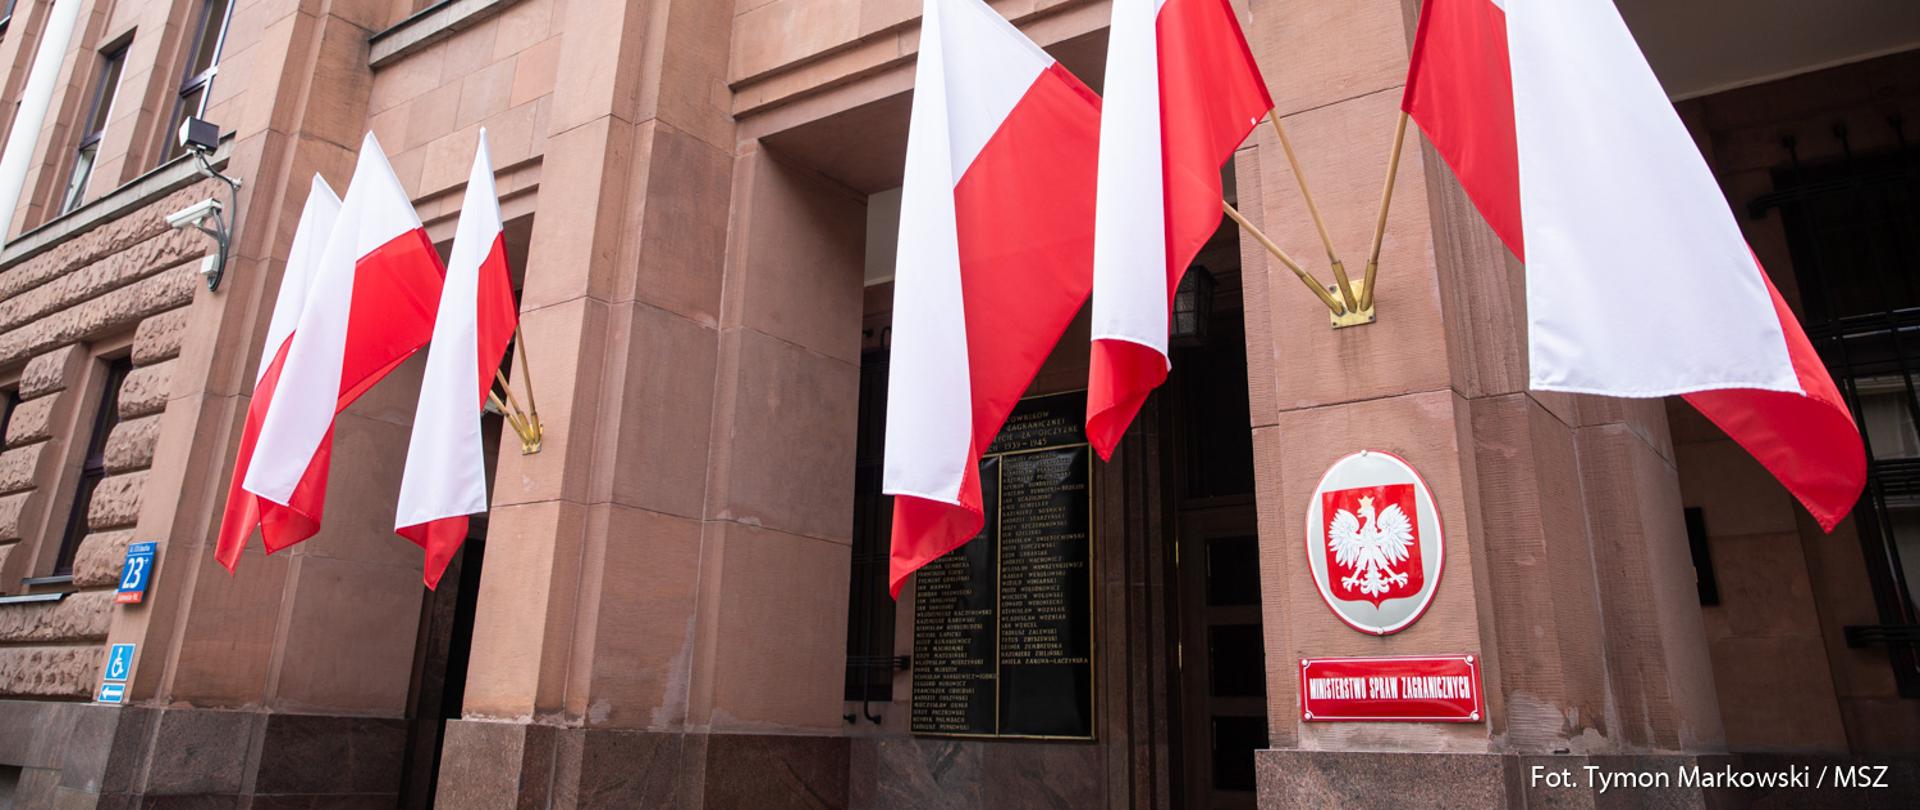 Front budynku Ministerstwa Spraw Zagranicznych, tabliczka z nazwą, godło i sześć biało-czerwonych flag.